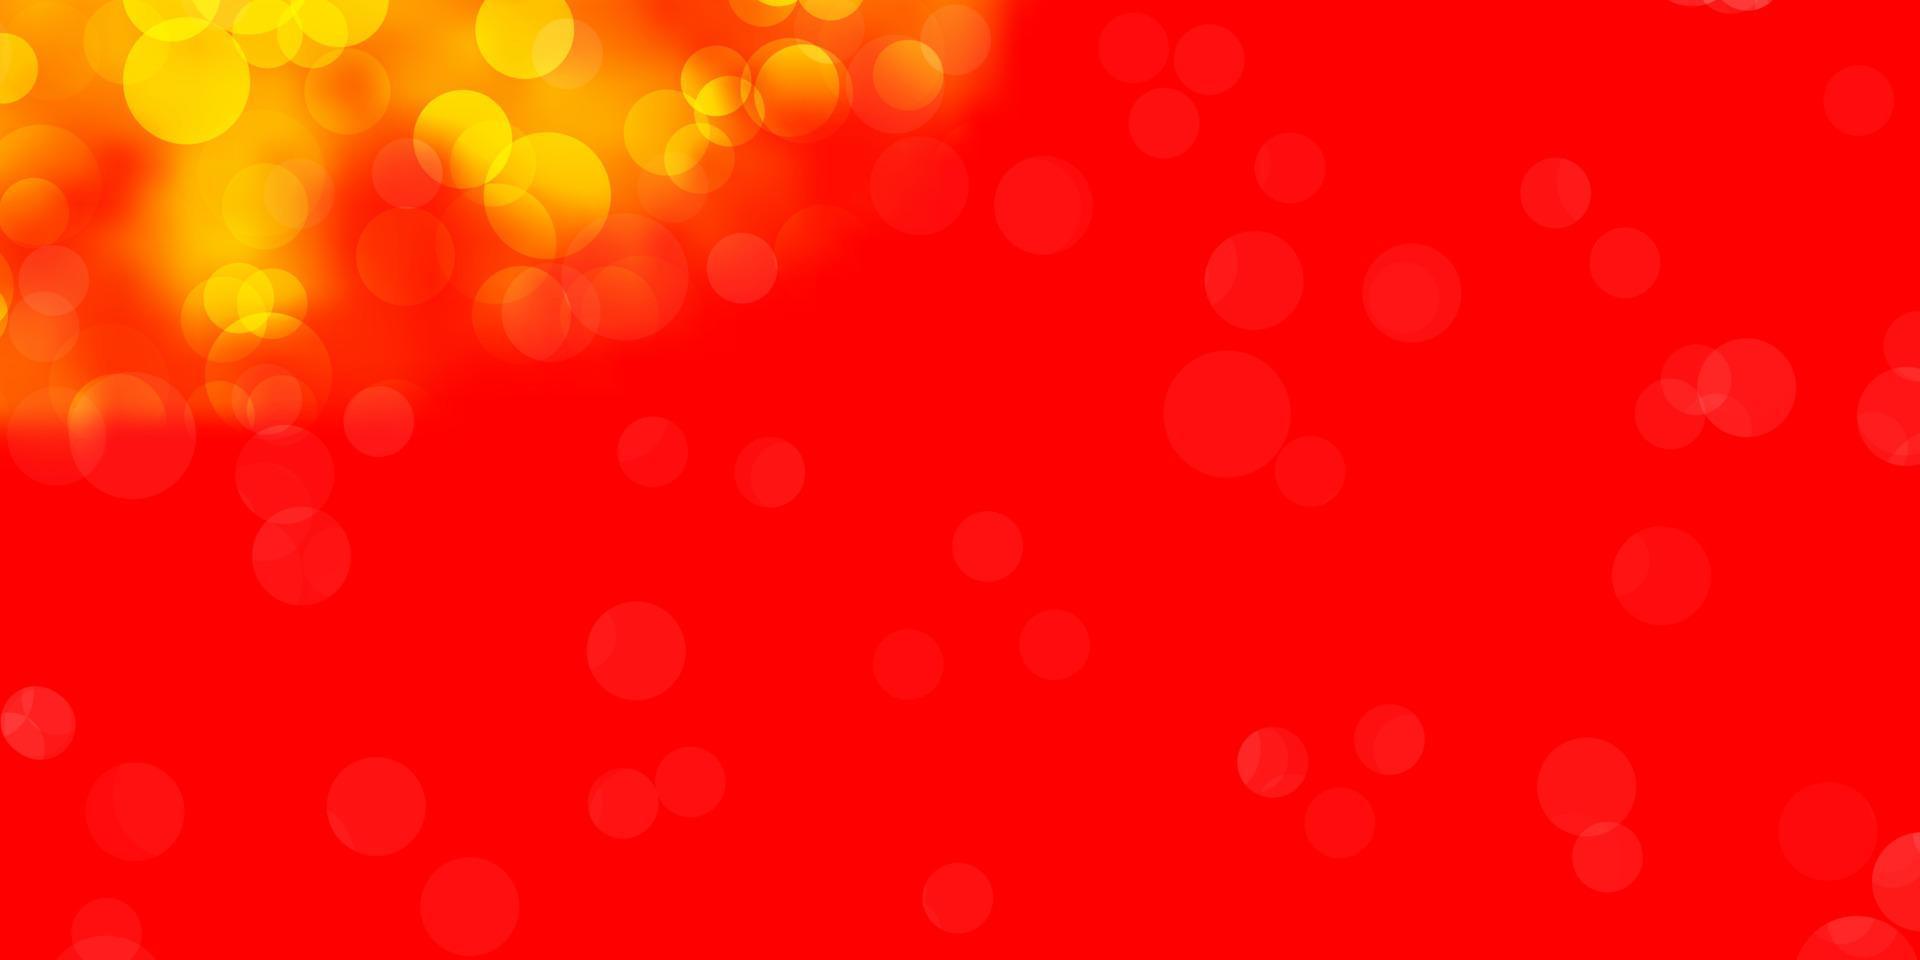 ljusröd, gul vektorbakgrund med bubblor. vektor